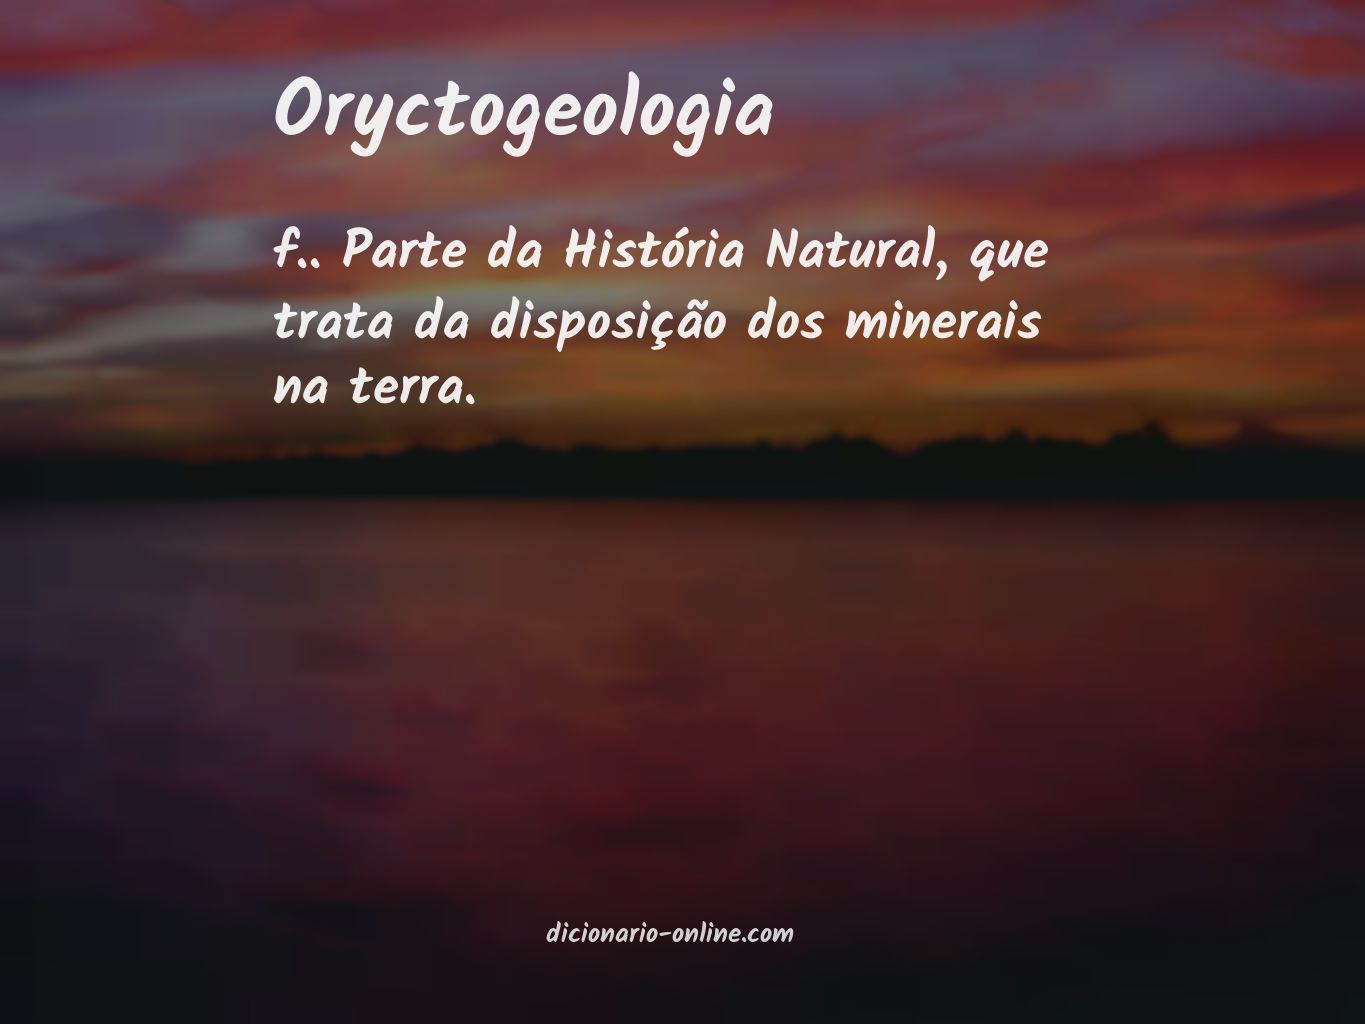 Significado de oryctogeologia